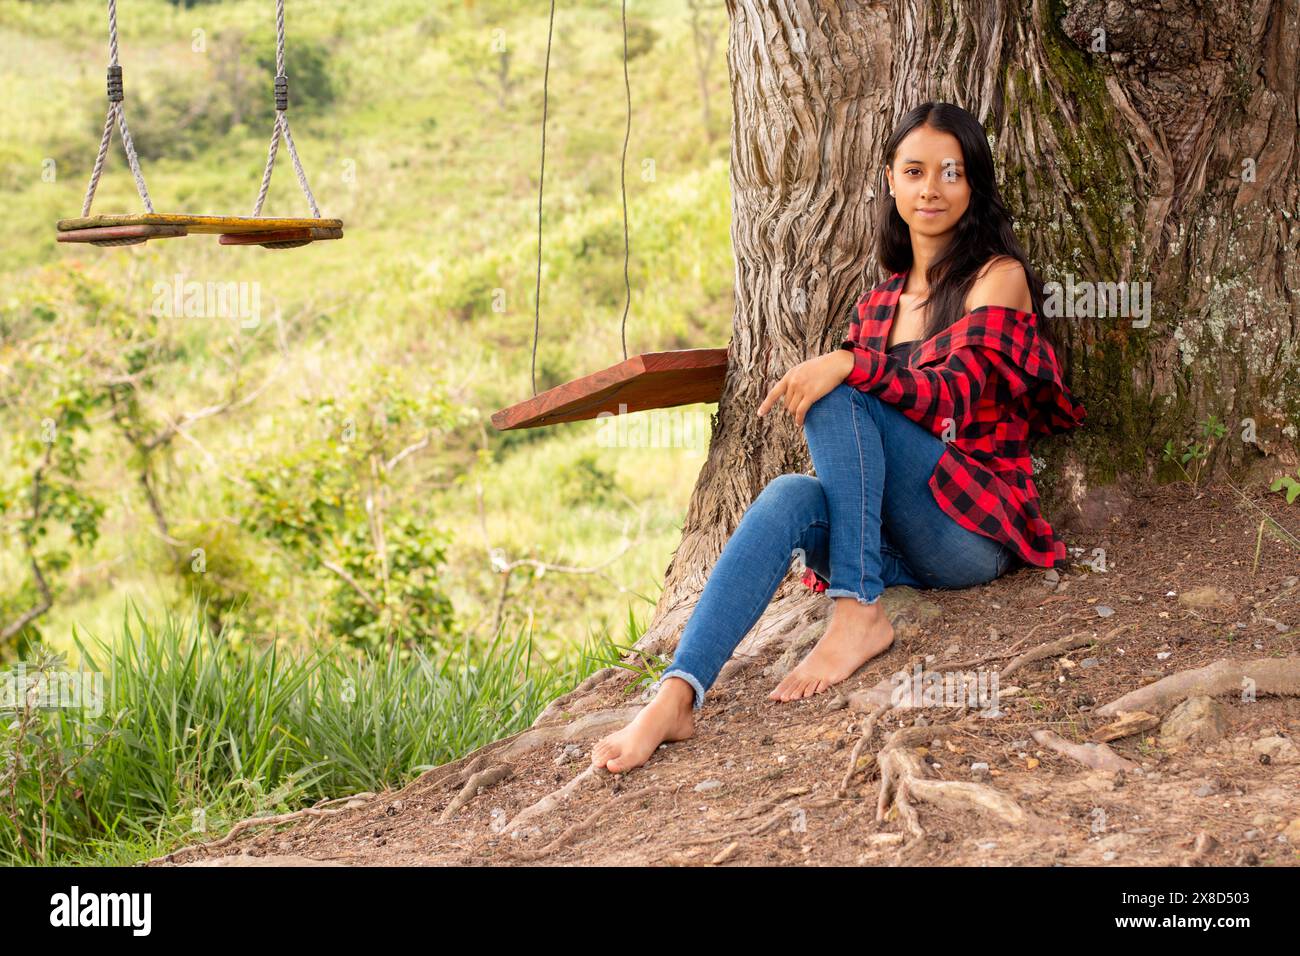 Lebensstil: latina-Frau entspannt sich, während sie barfuß unter einem riesigen Baum in einem Park sitzt Stockfoto